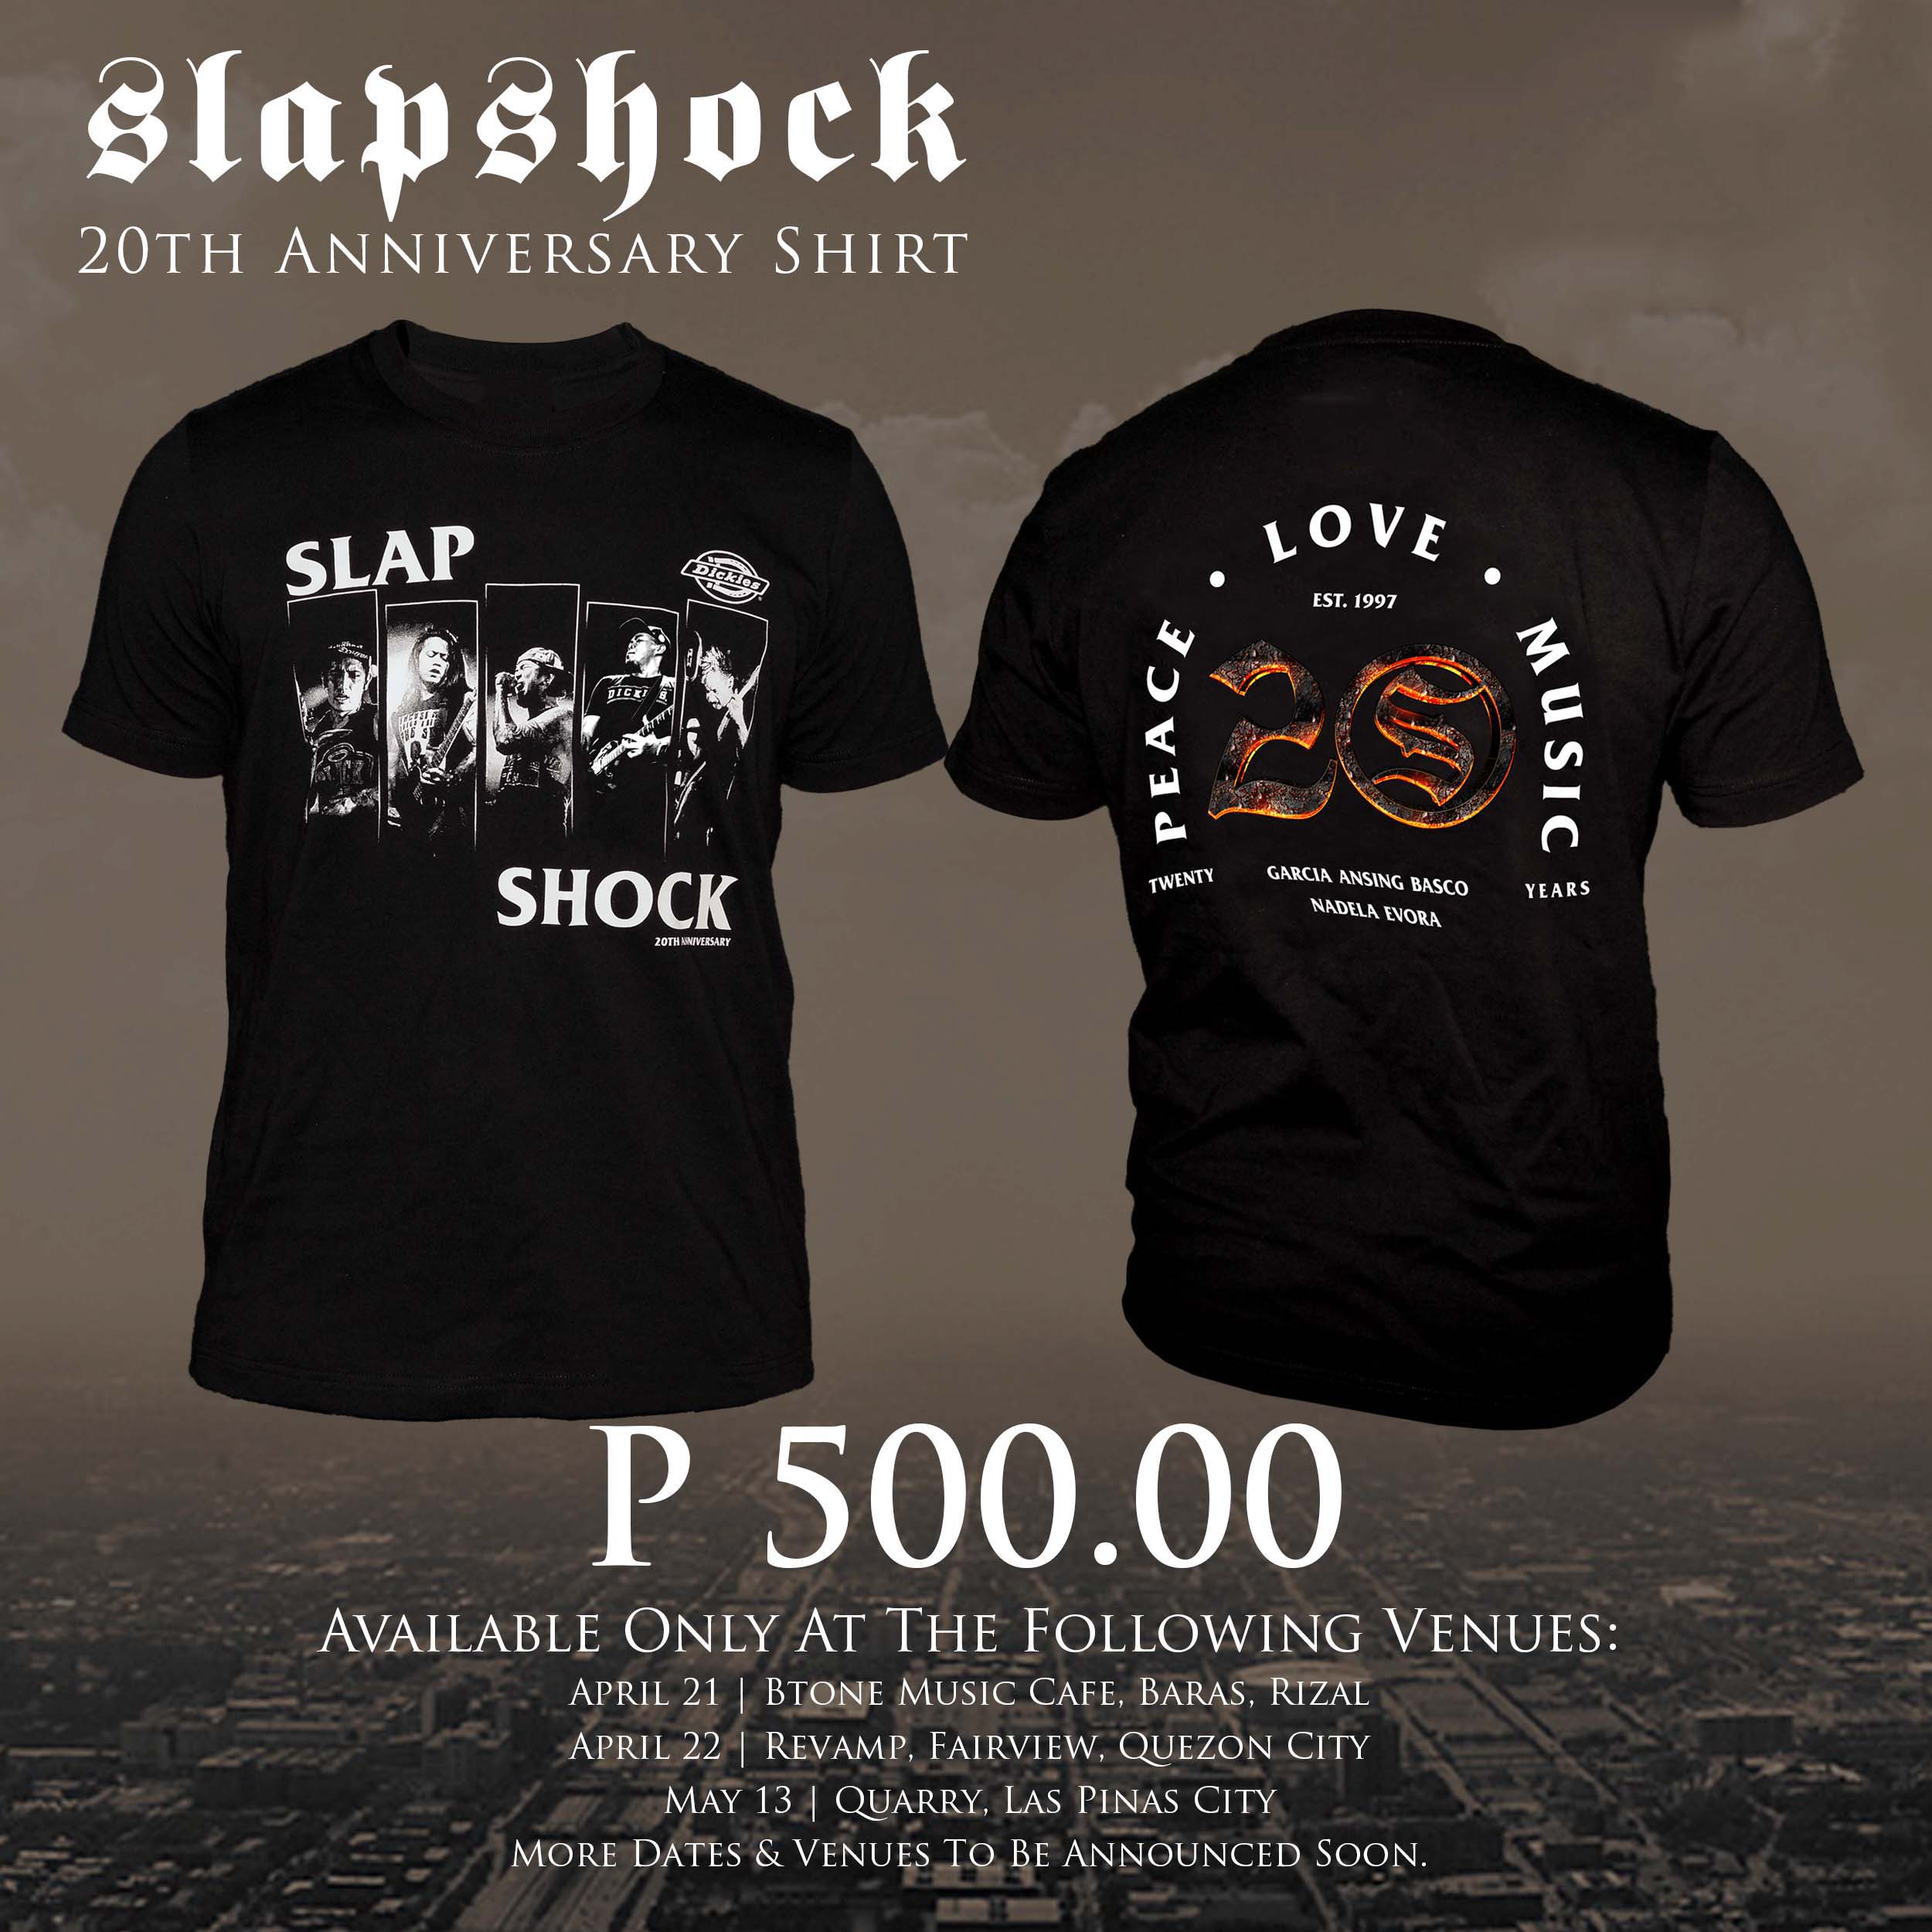 slapshock 20th anniversary shirt lazada ph slapshock 20th anniversary shirt